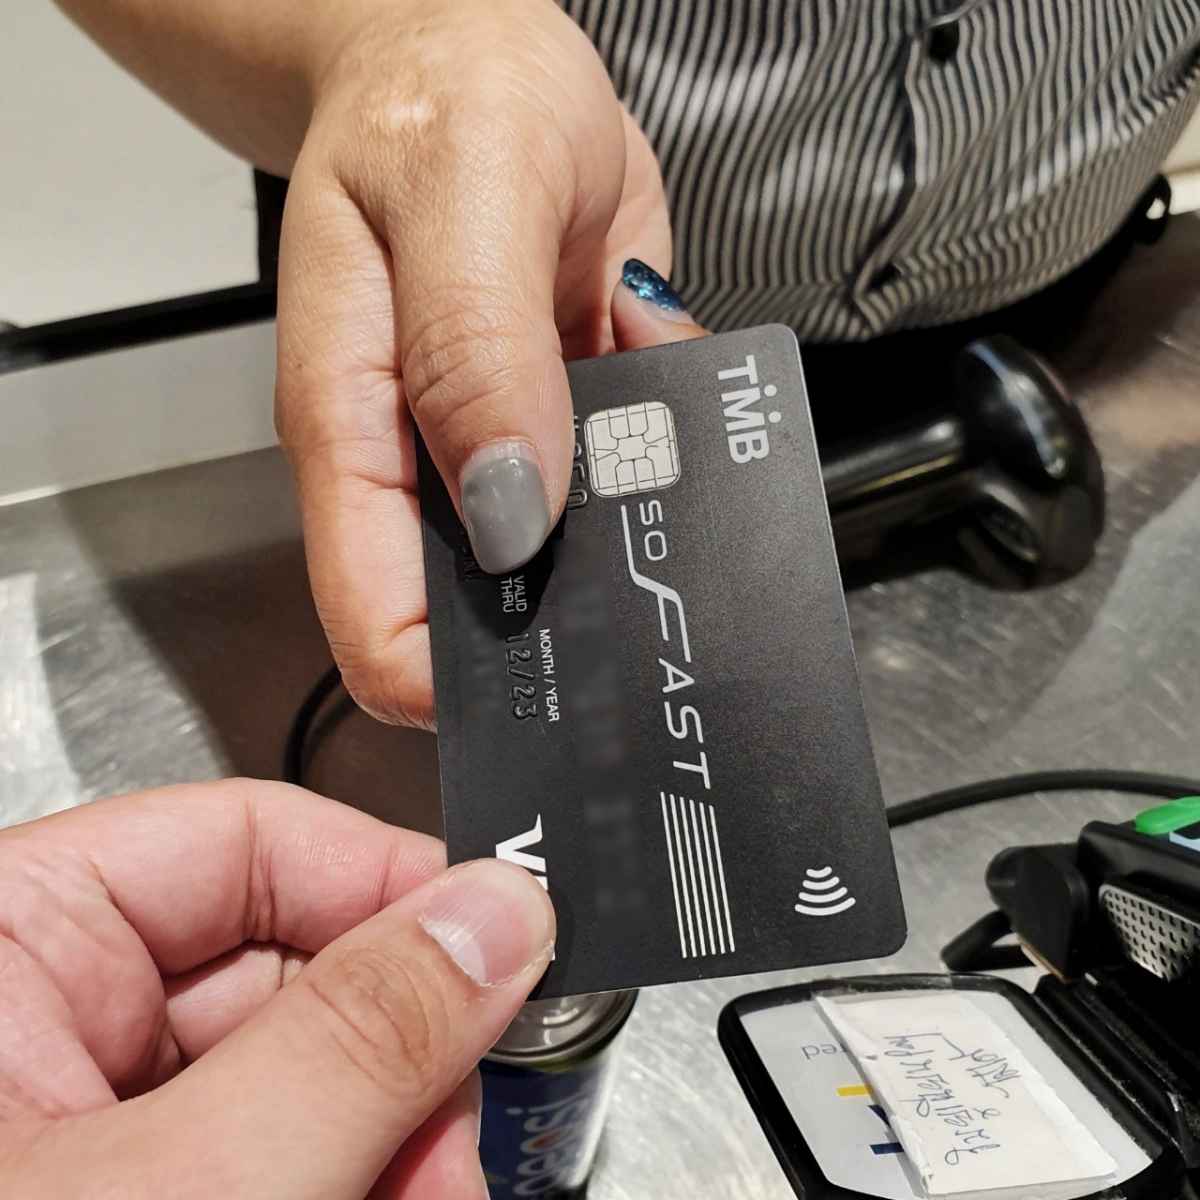 TMB Credit Card